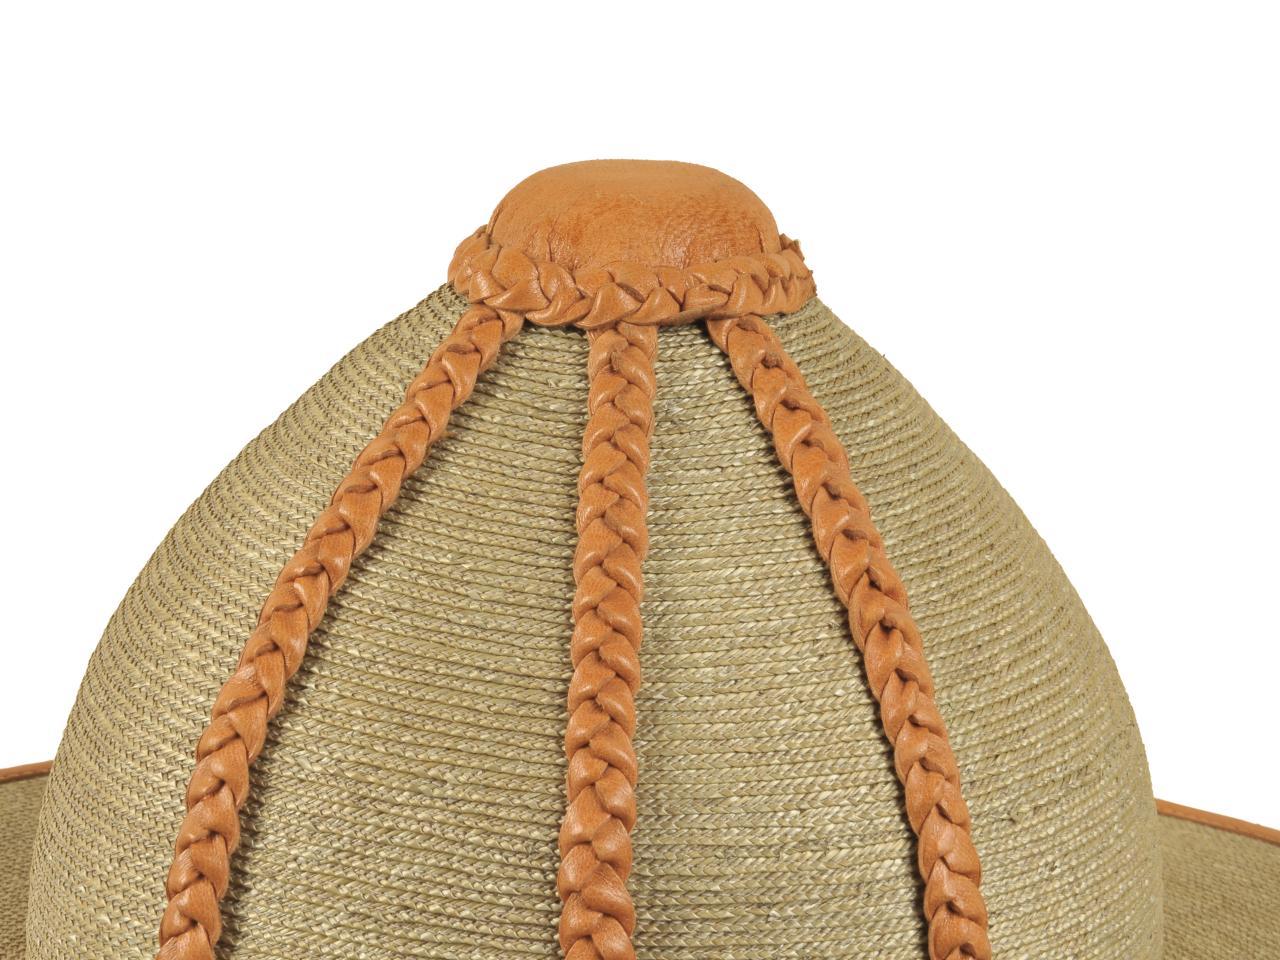 Detalle de copa de bonete, sombrero de hombre en paja teatina trenzada y teñida con tintes naturales, con adornos de cuero trenzado